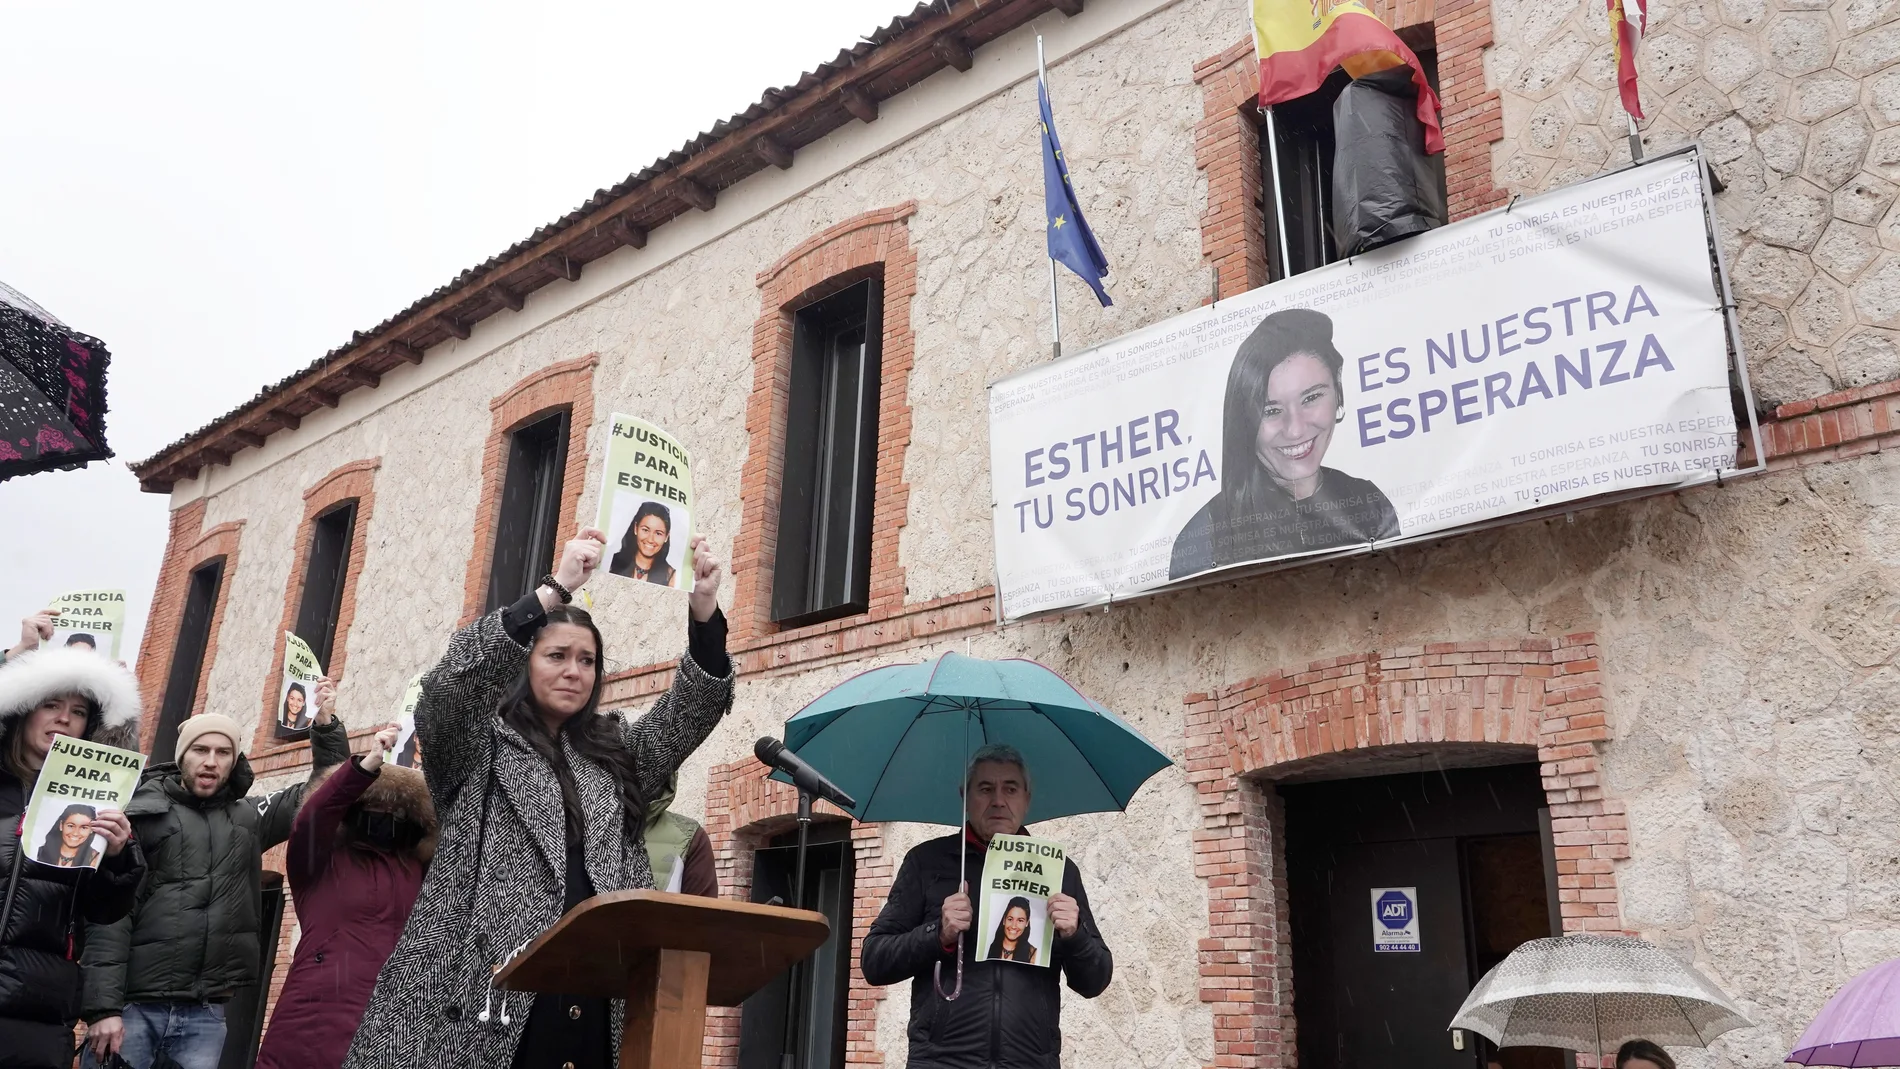 Concentración para pedir justicia para Esther López, cuando se cumplen dos años de su desaparición y muerte